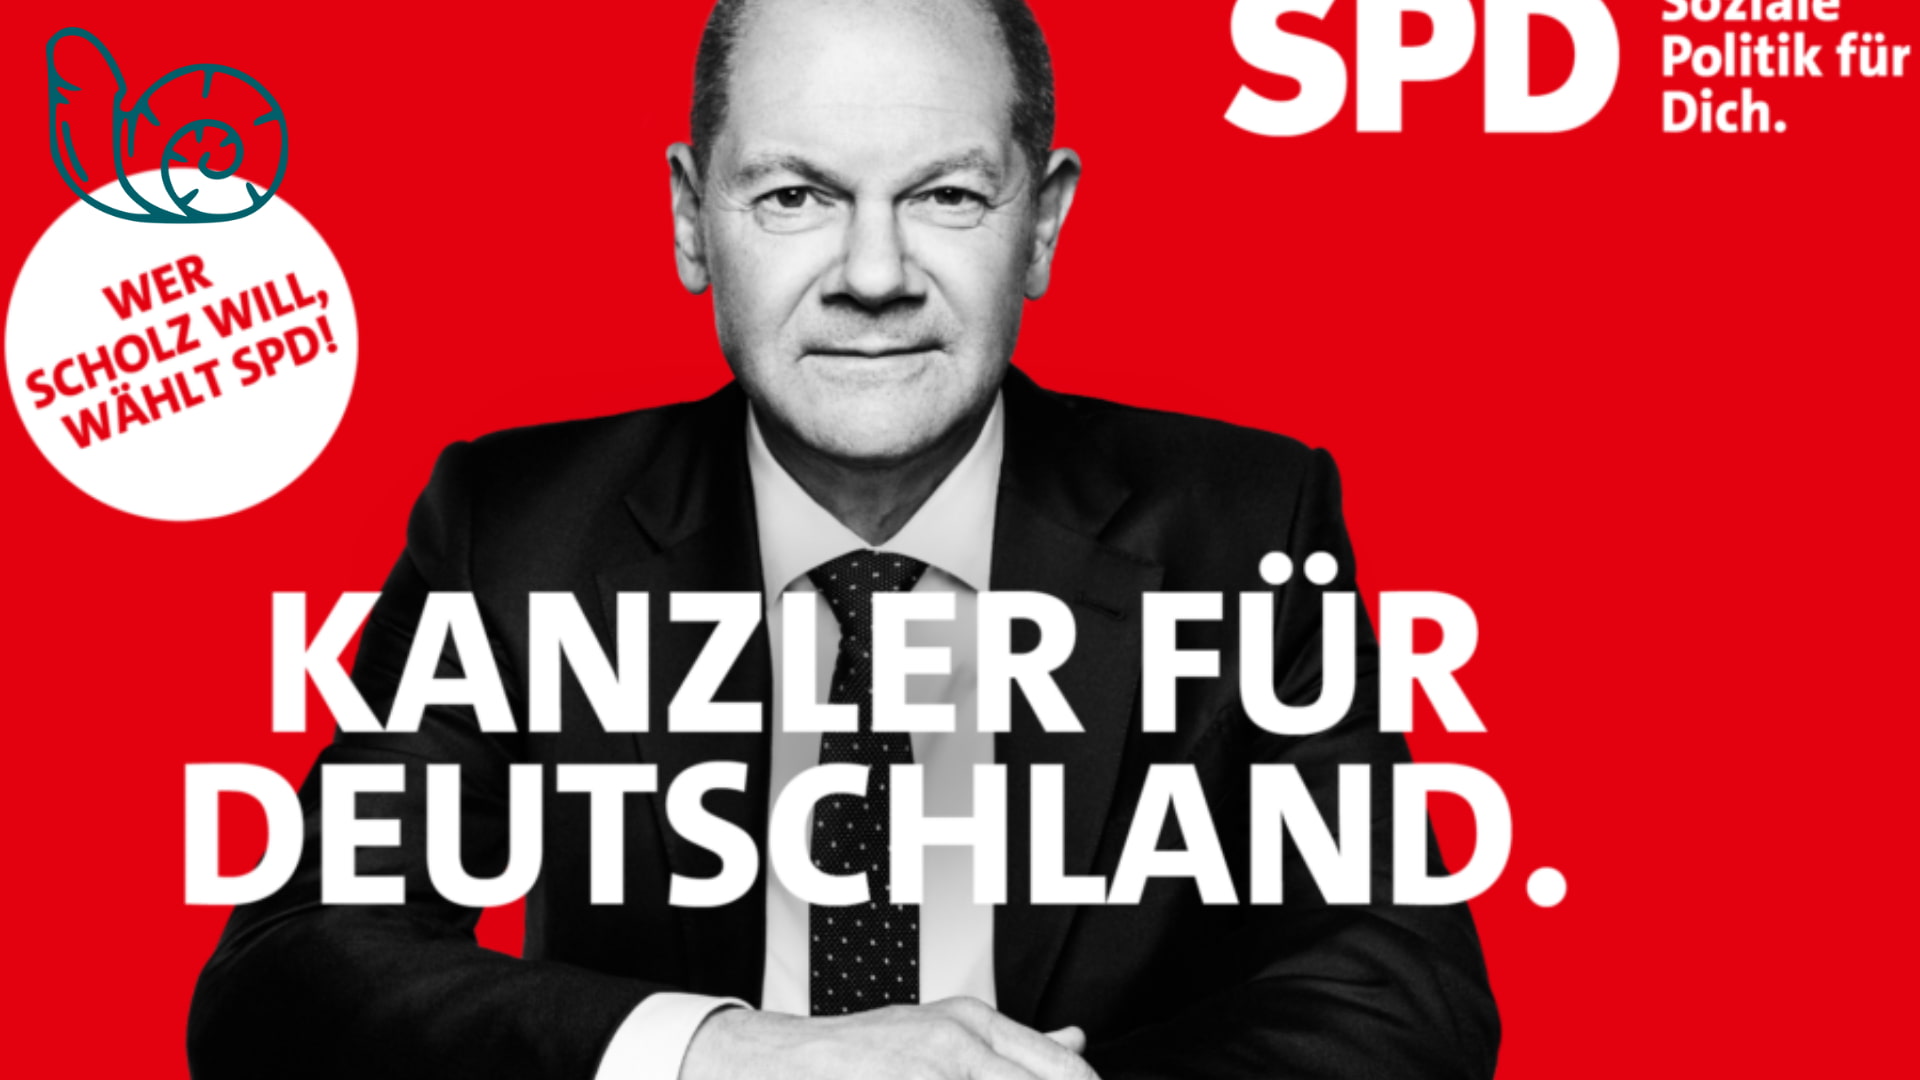 Bild für den Beitrag: Die SPD im Satiretest